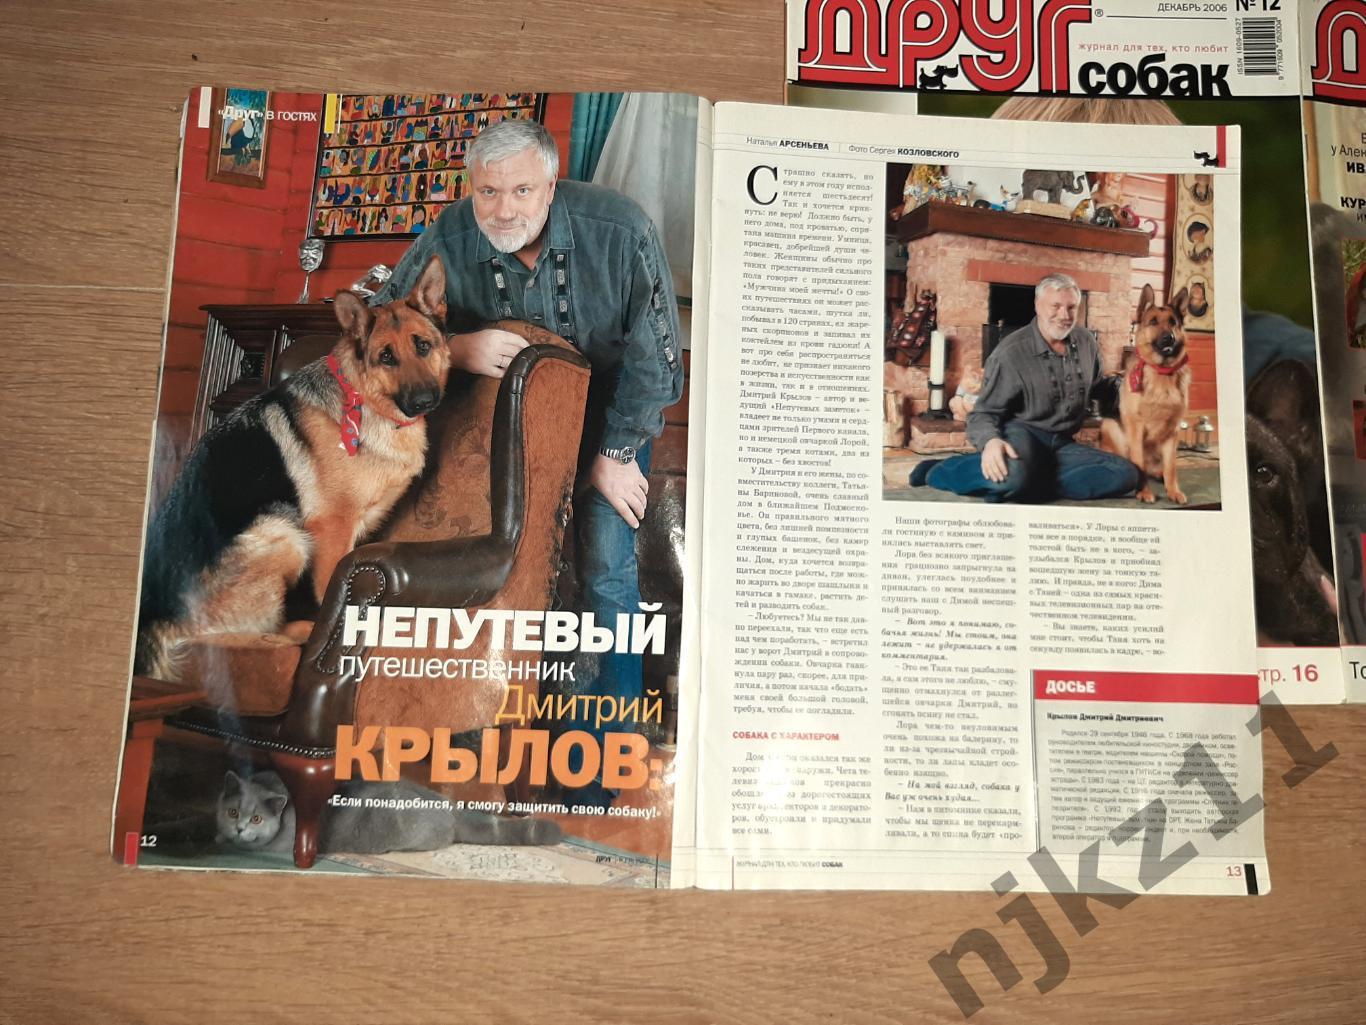 Друг Собак 3 выпуска за 2006г группа Рондо, заметки Дмитрия Крылова, Чихуа-хуа, 2